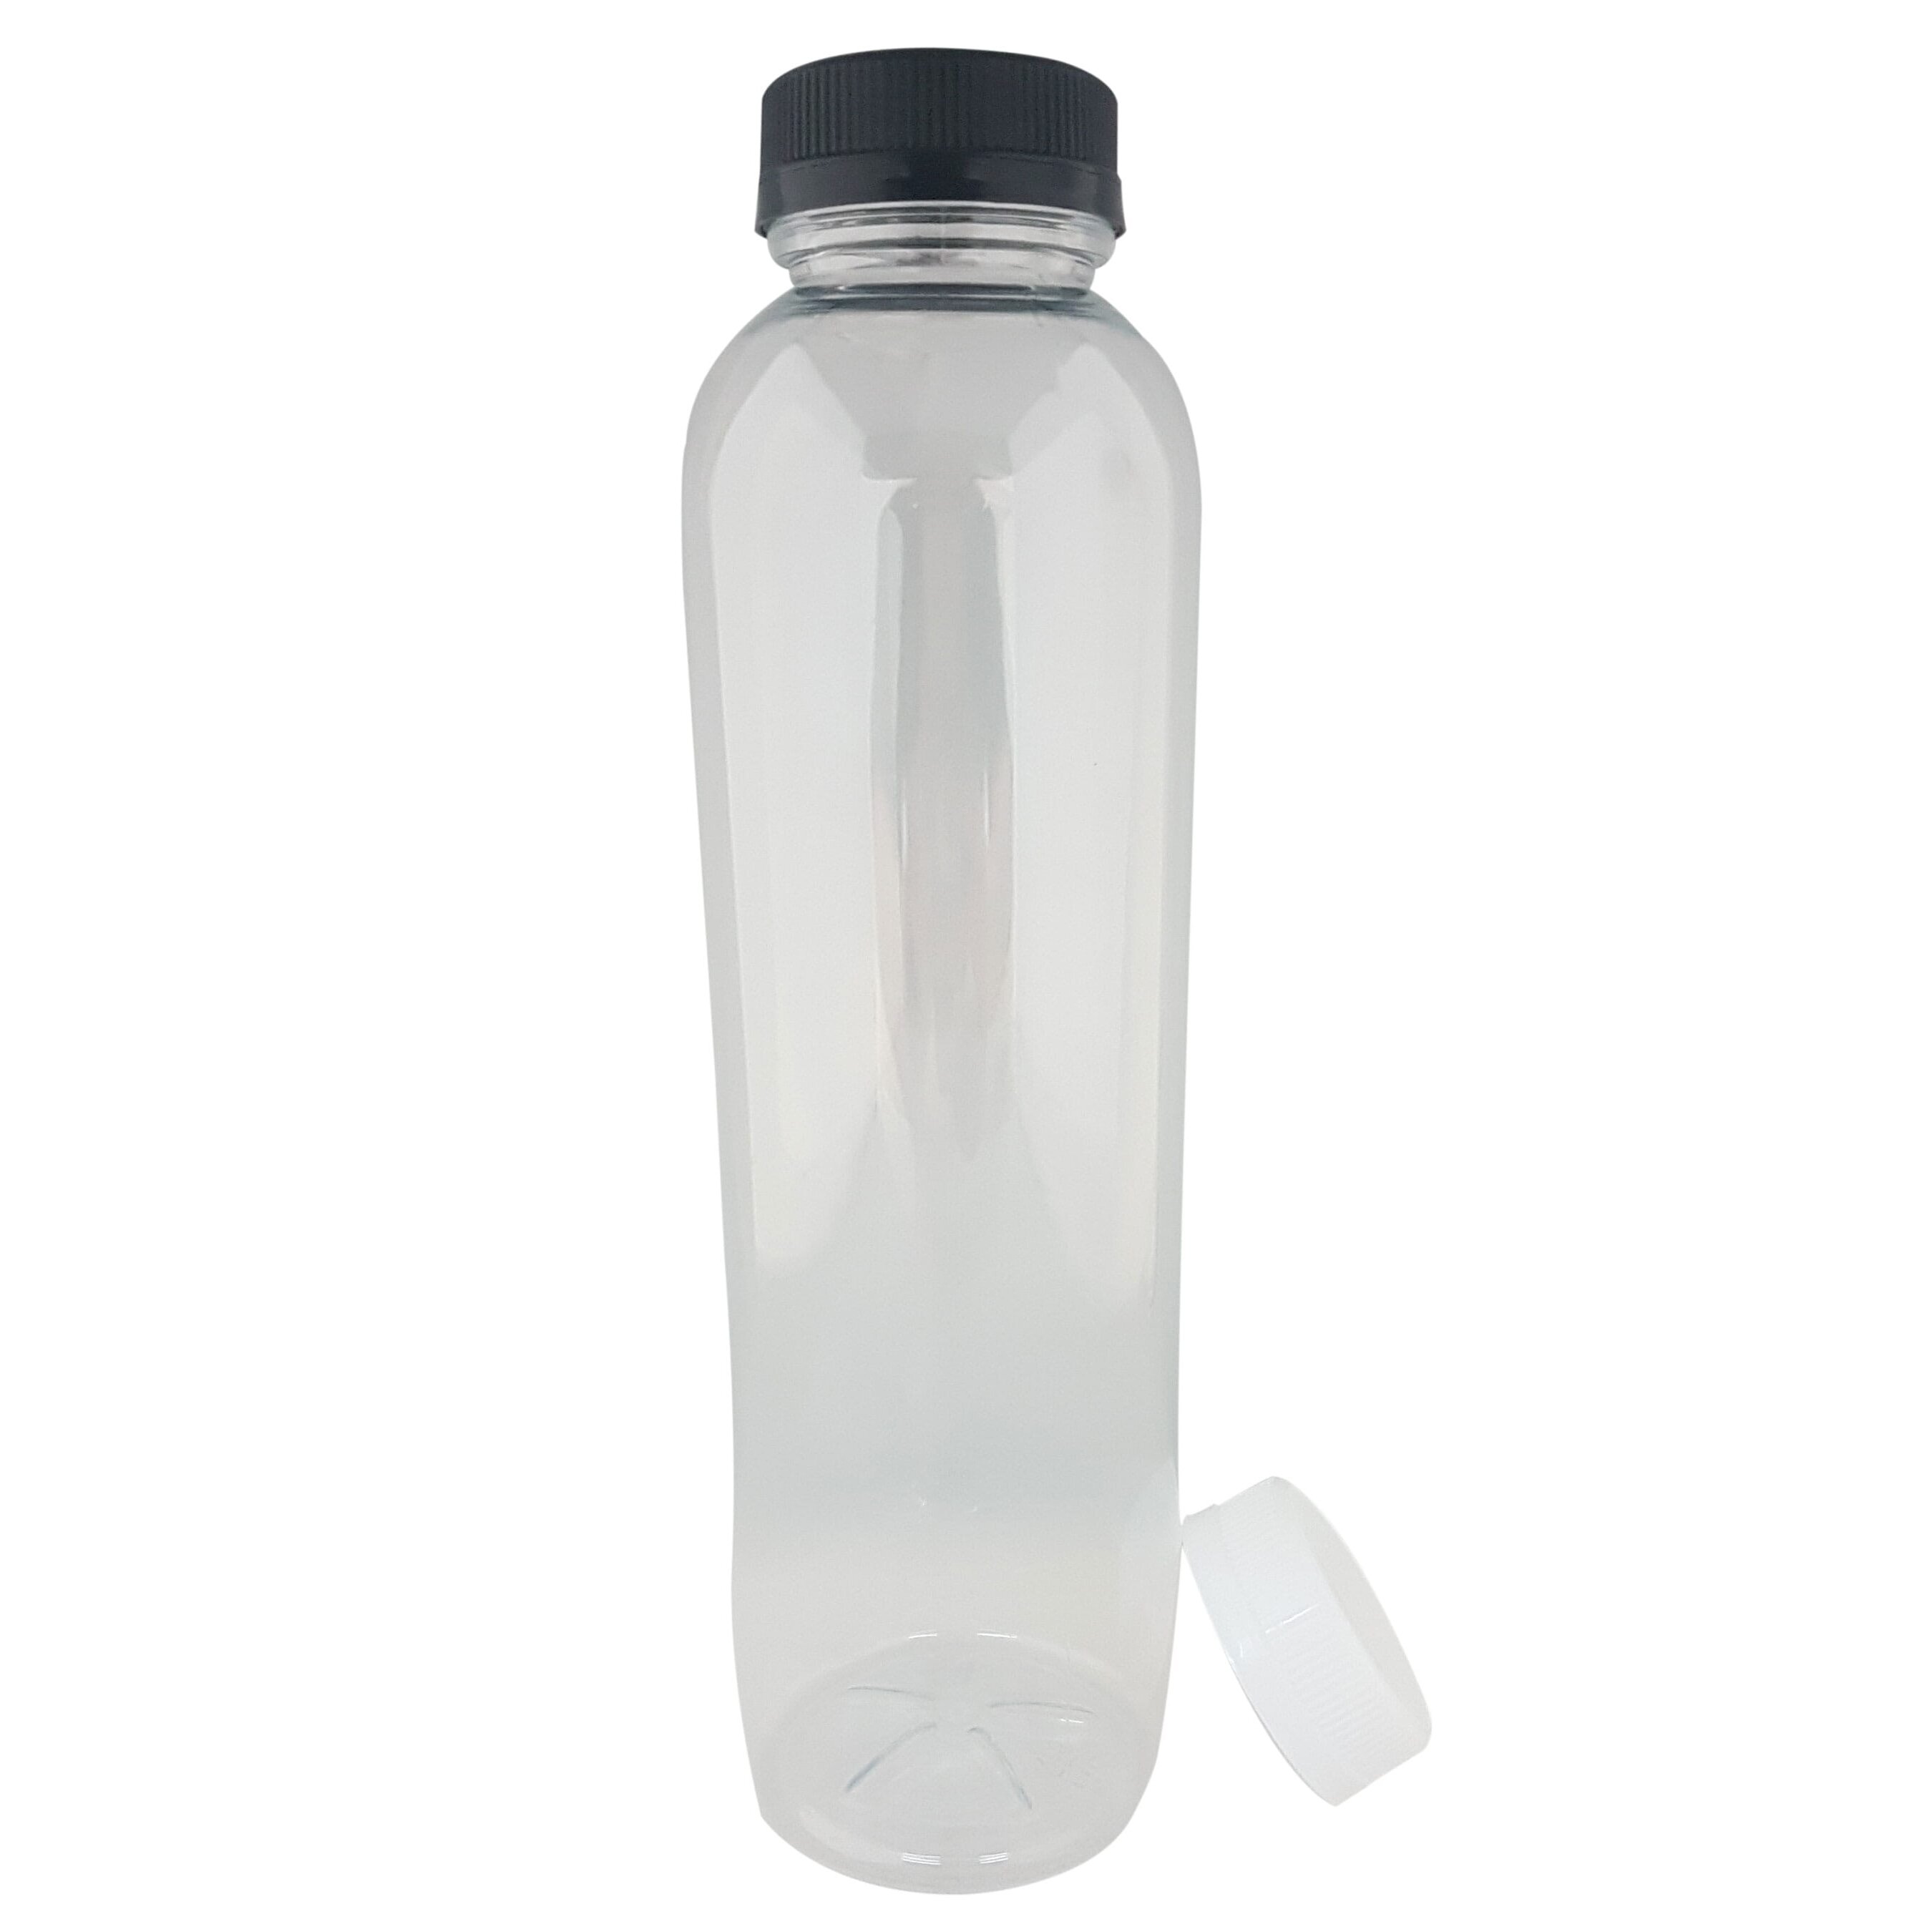 Jenpak Clear Round Juice Bottle 16oz/500ml - 1x220